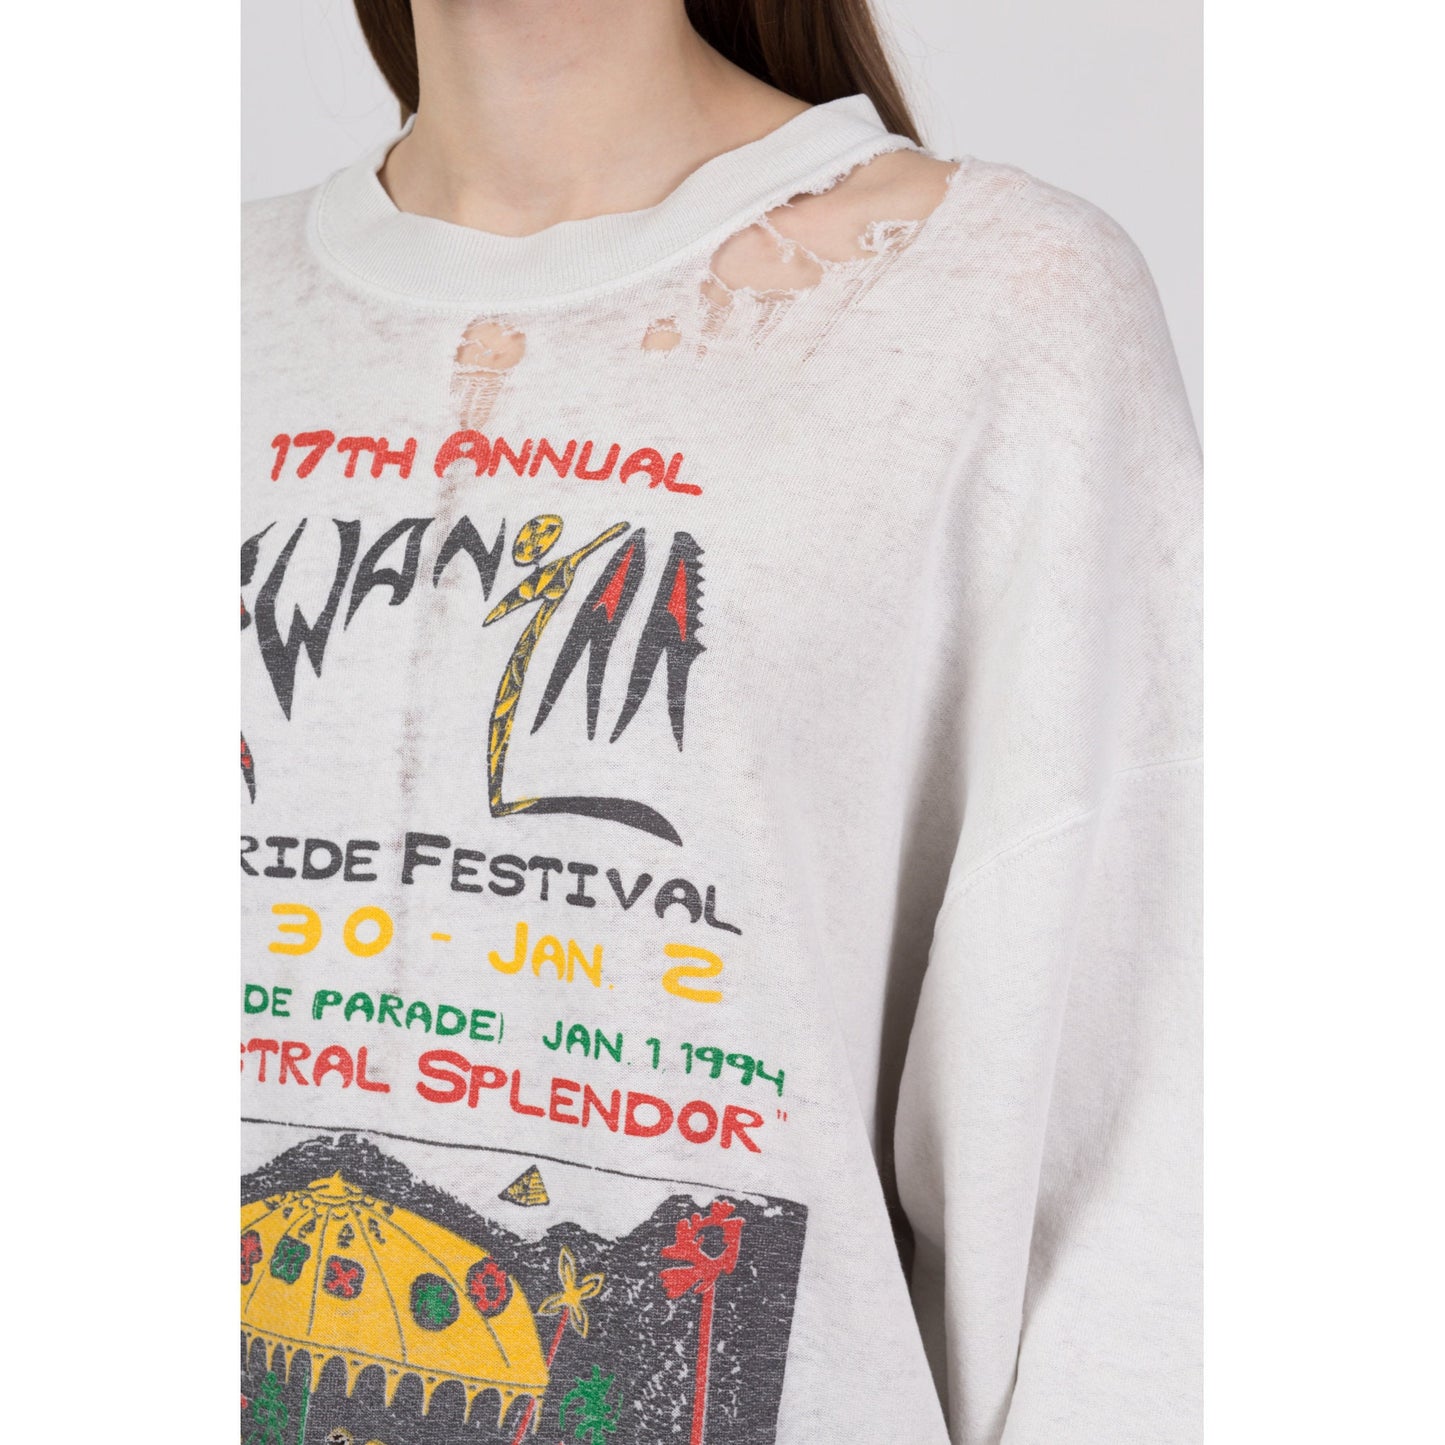 90s Kwanzaa Festival Thrashed Sweatshirt - Men's XL, Women's XXL 